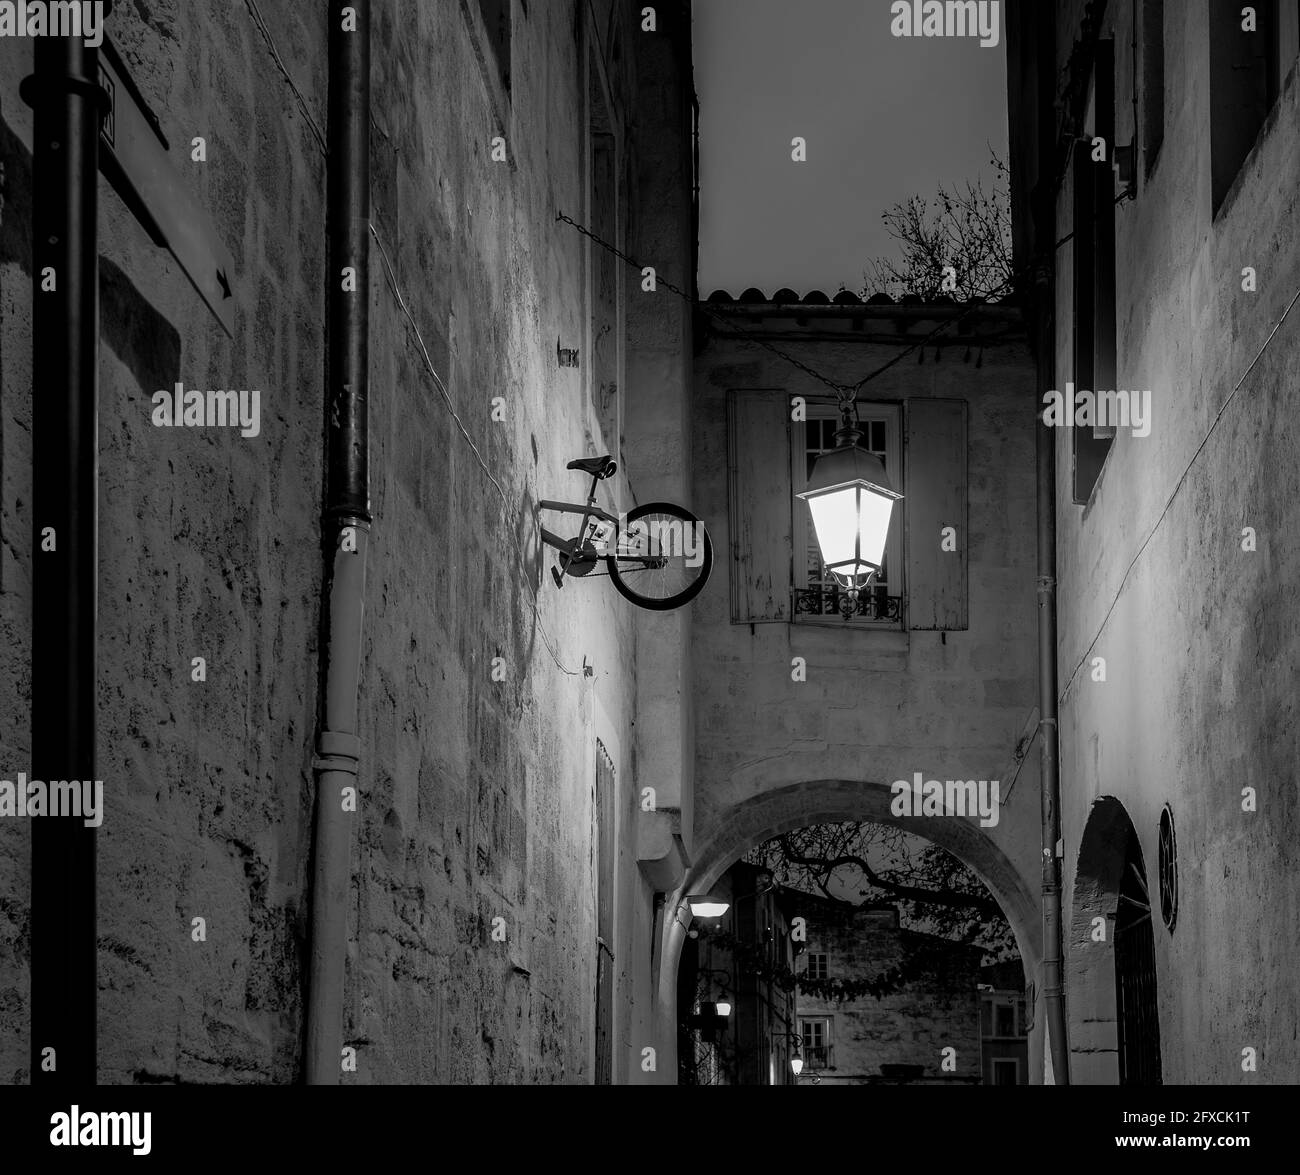 Allée étroite traditionnelle de nuit dans une vieille ville européenne avec une lampe et une installation d'art de rue - Montpellier, sud de la France ; noir et blanc Banque D'Images